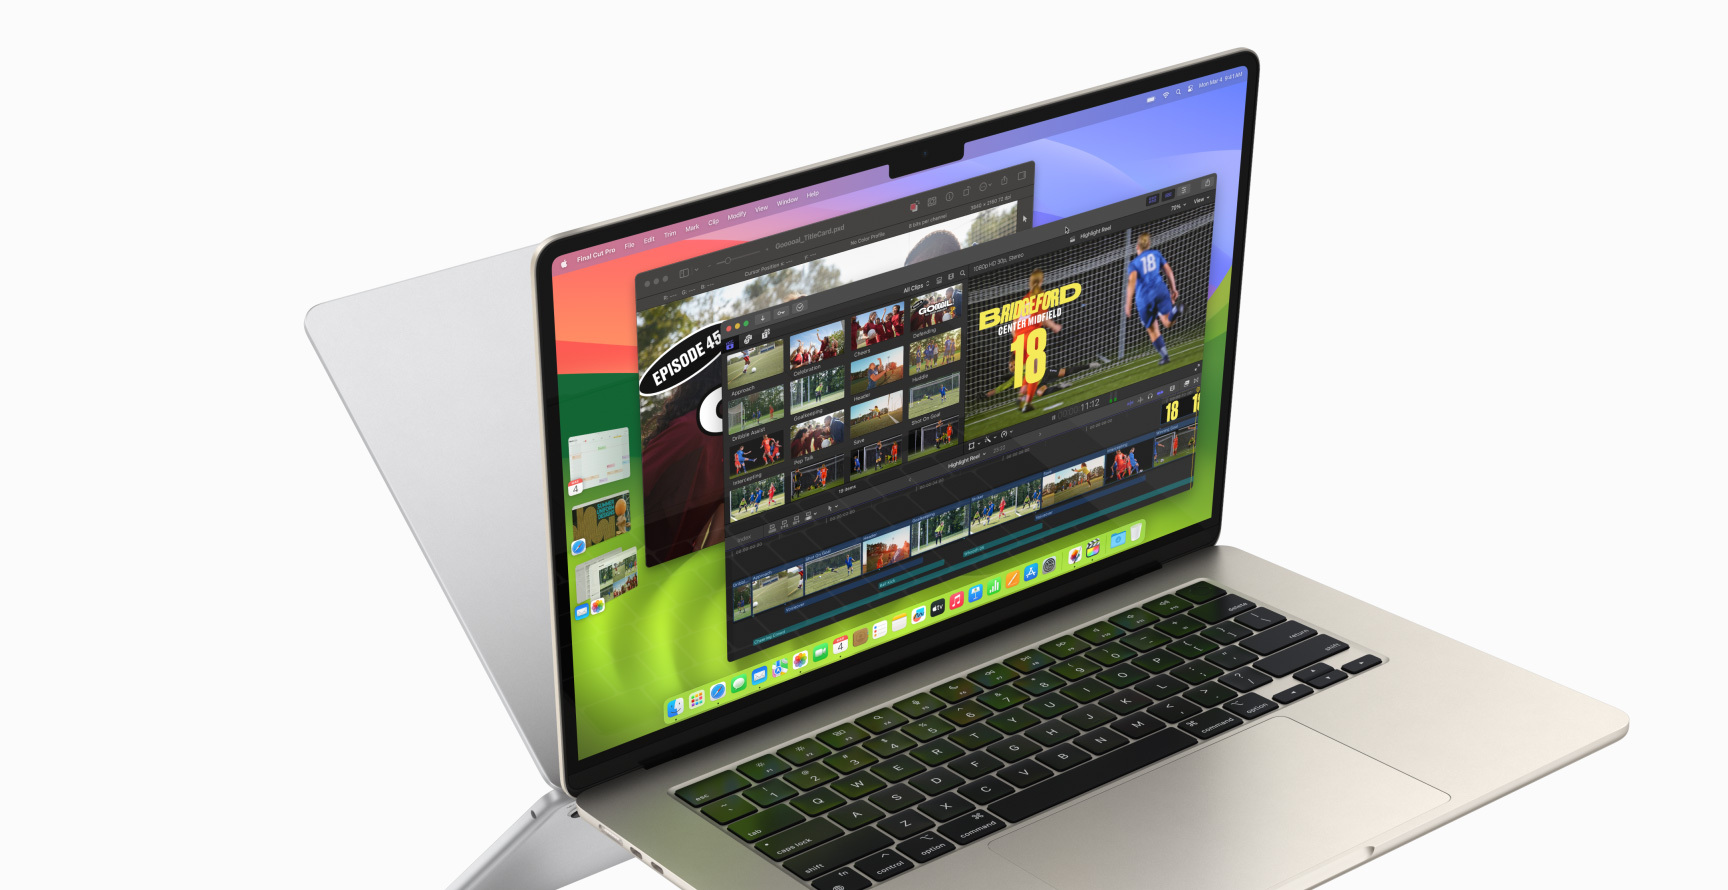 Un MacBook Air aperto che mostra Final Cut Pro e Pixelmator Pro, con le app Calendario, Safari, Mail e Foto aperte sulla sinistra. Dietro si nota il retro di un altro MacBook, come fosse un’immagine riflessa.